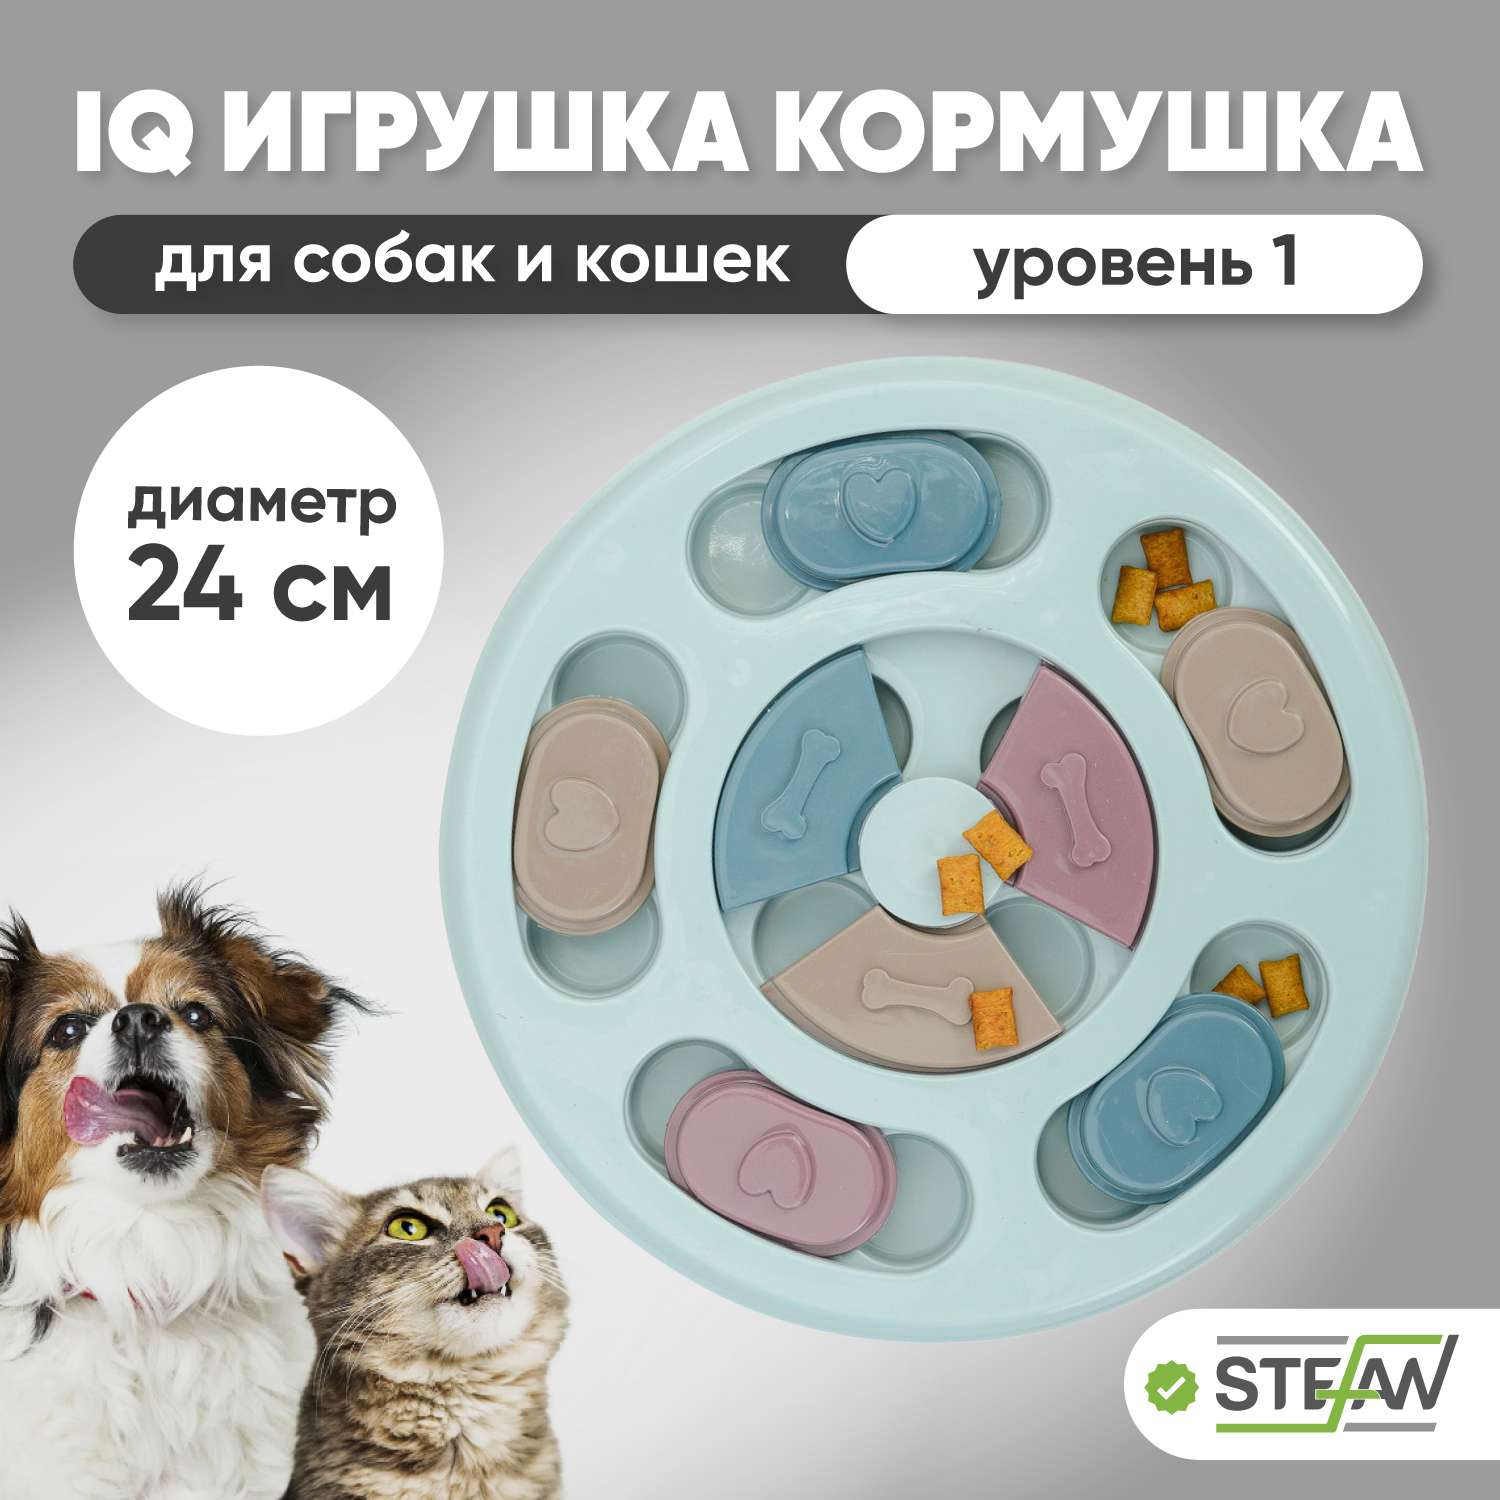 Игрушка для животных Stefan интерактивная развивающая головоломка IQ синяя - фото 1